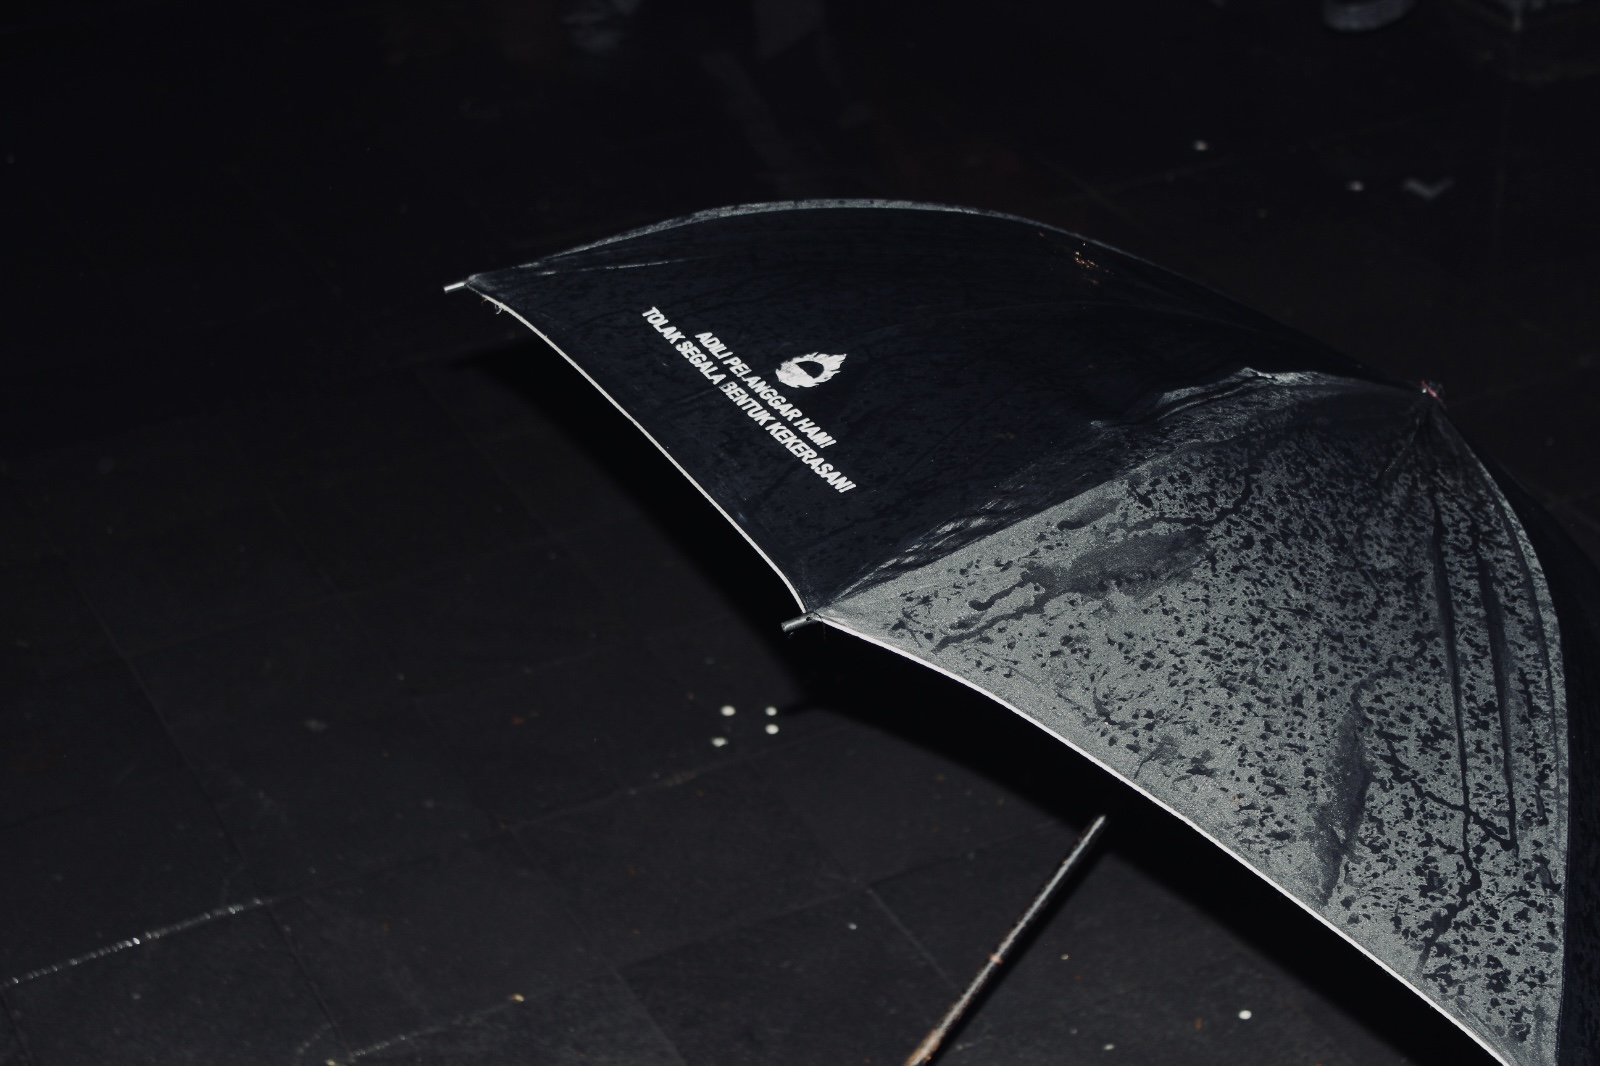 Payung hitam Aksi Kamisan bertuliskan, “Adili Pelanggar HAM! Tolak Segala Bentuk kekerasan!”  ©Michelle/Bal